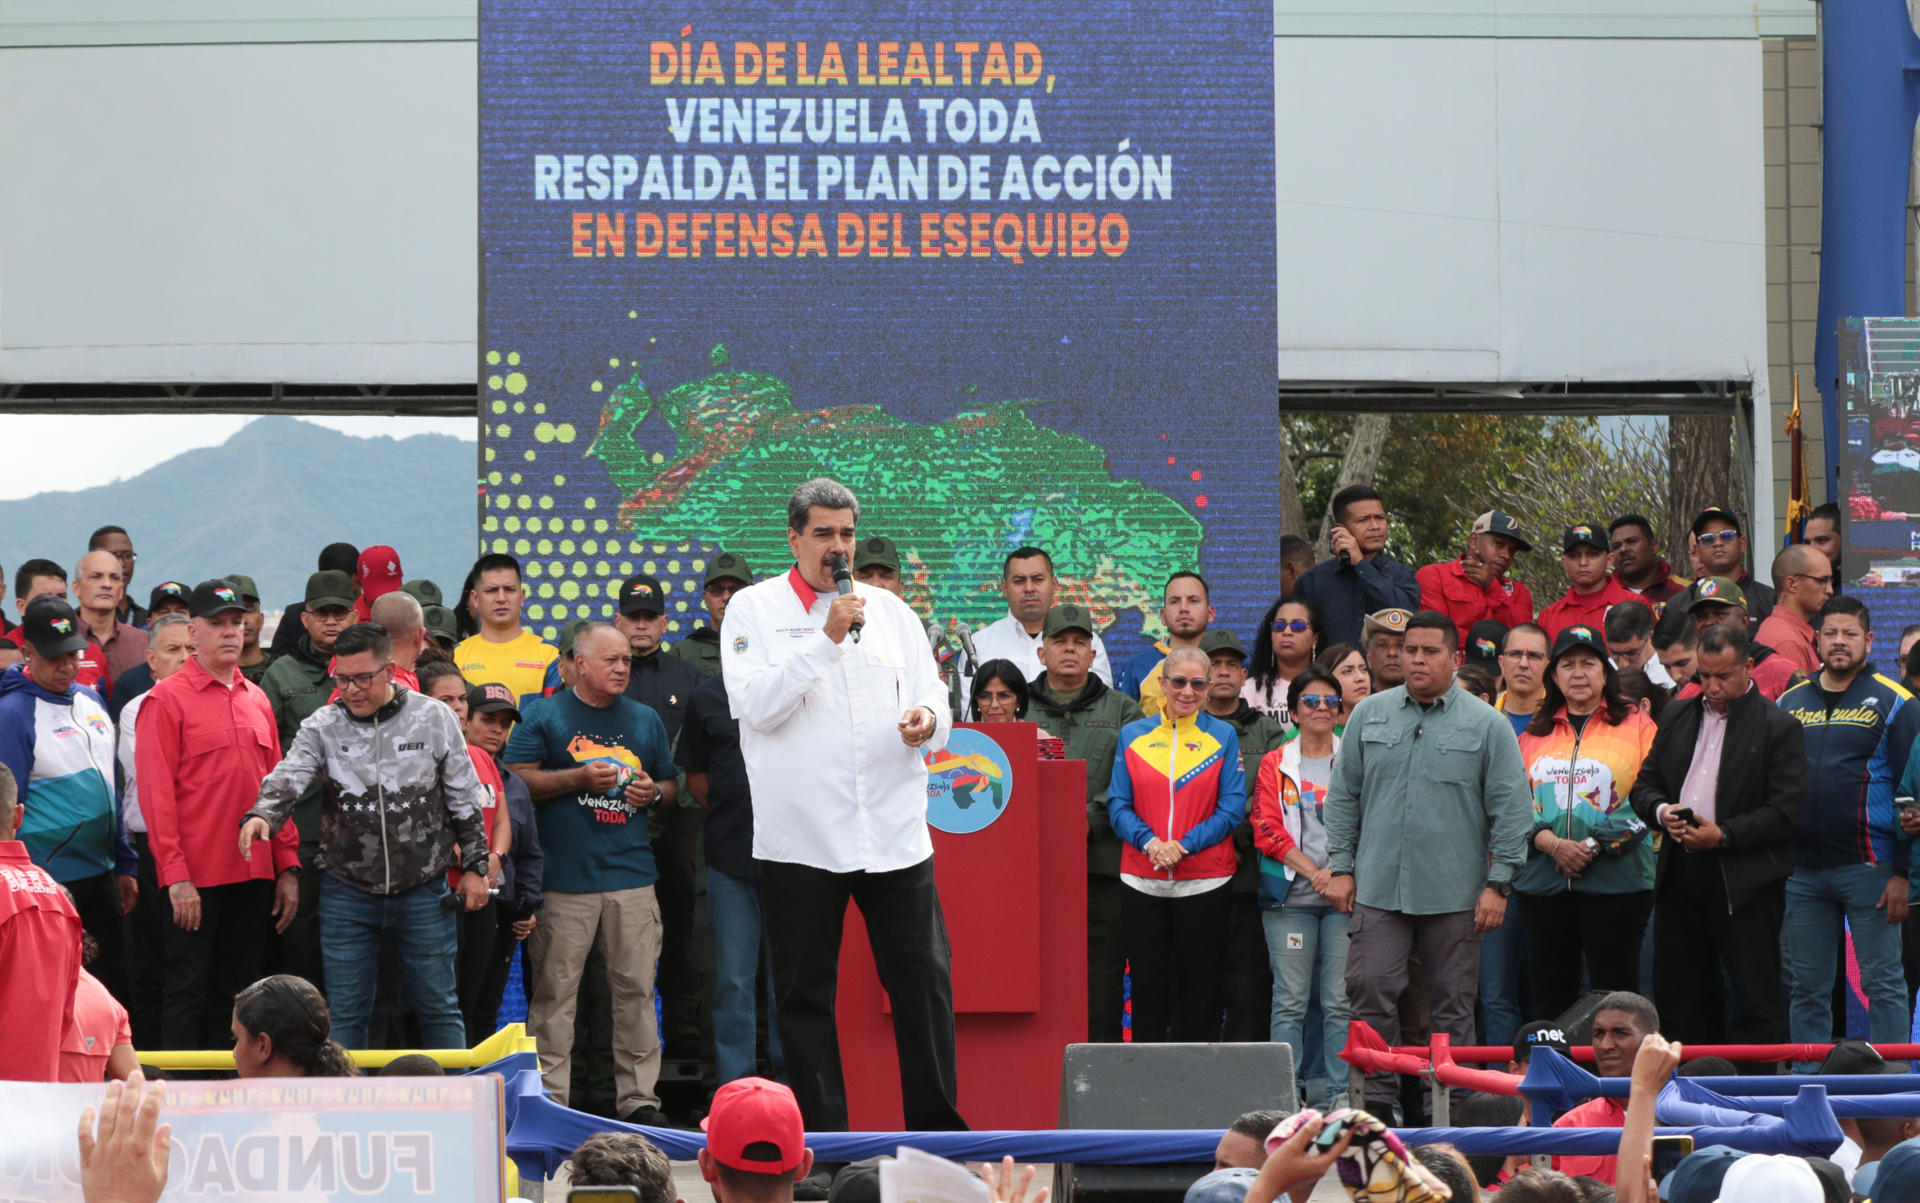 Jefe de estado dijo desconocer a los nueve candidatos de la oposición venezolana